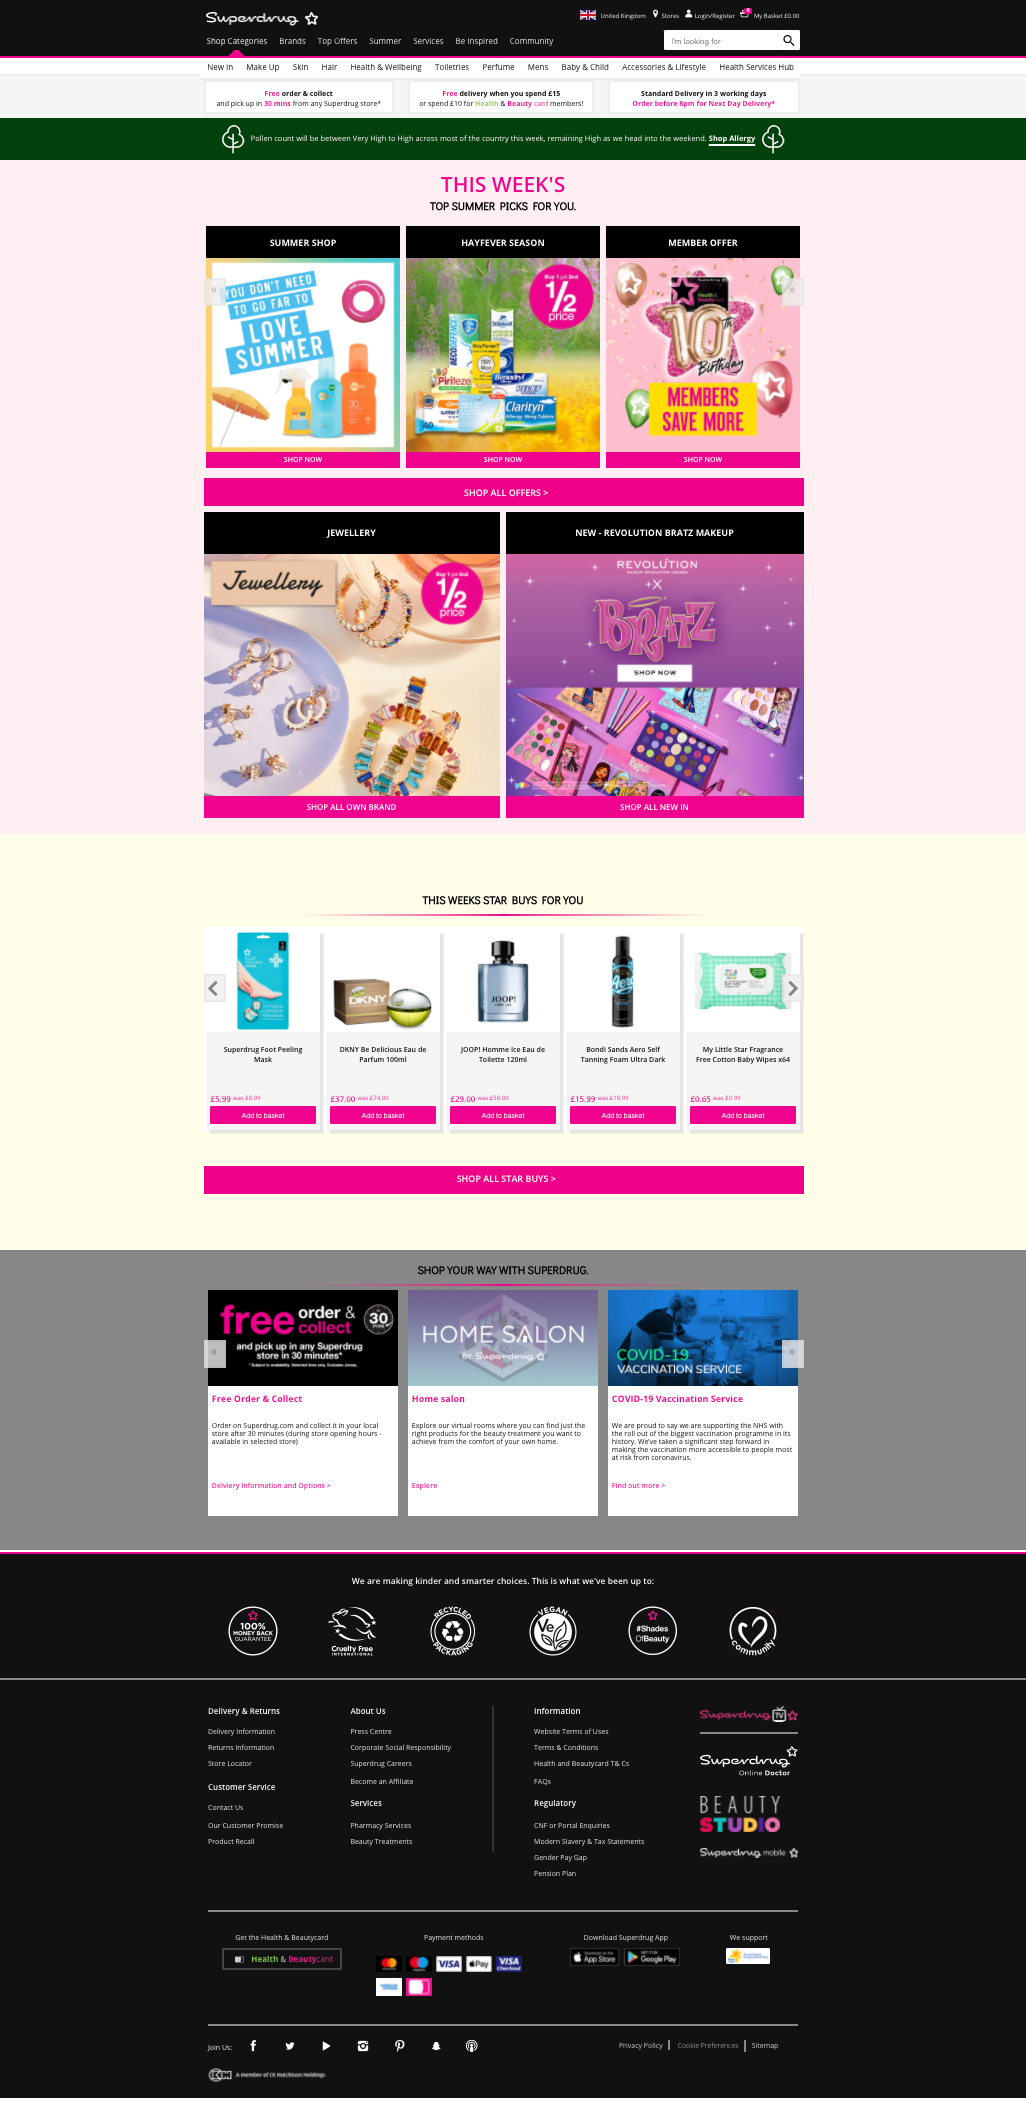 Superdrug website with original colors